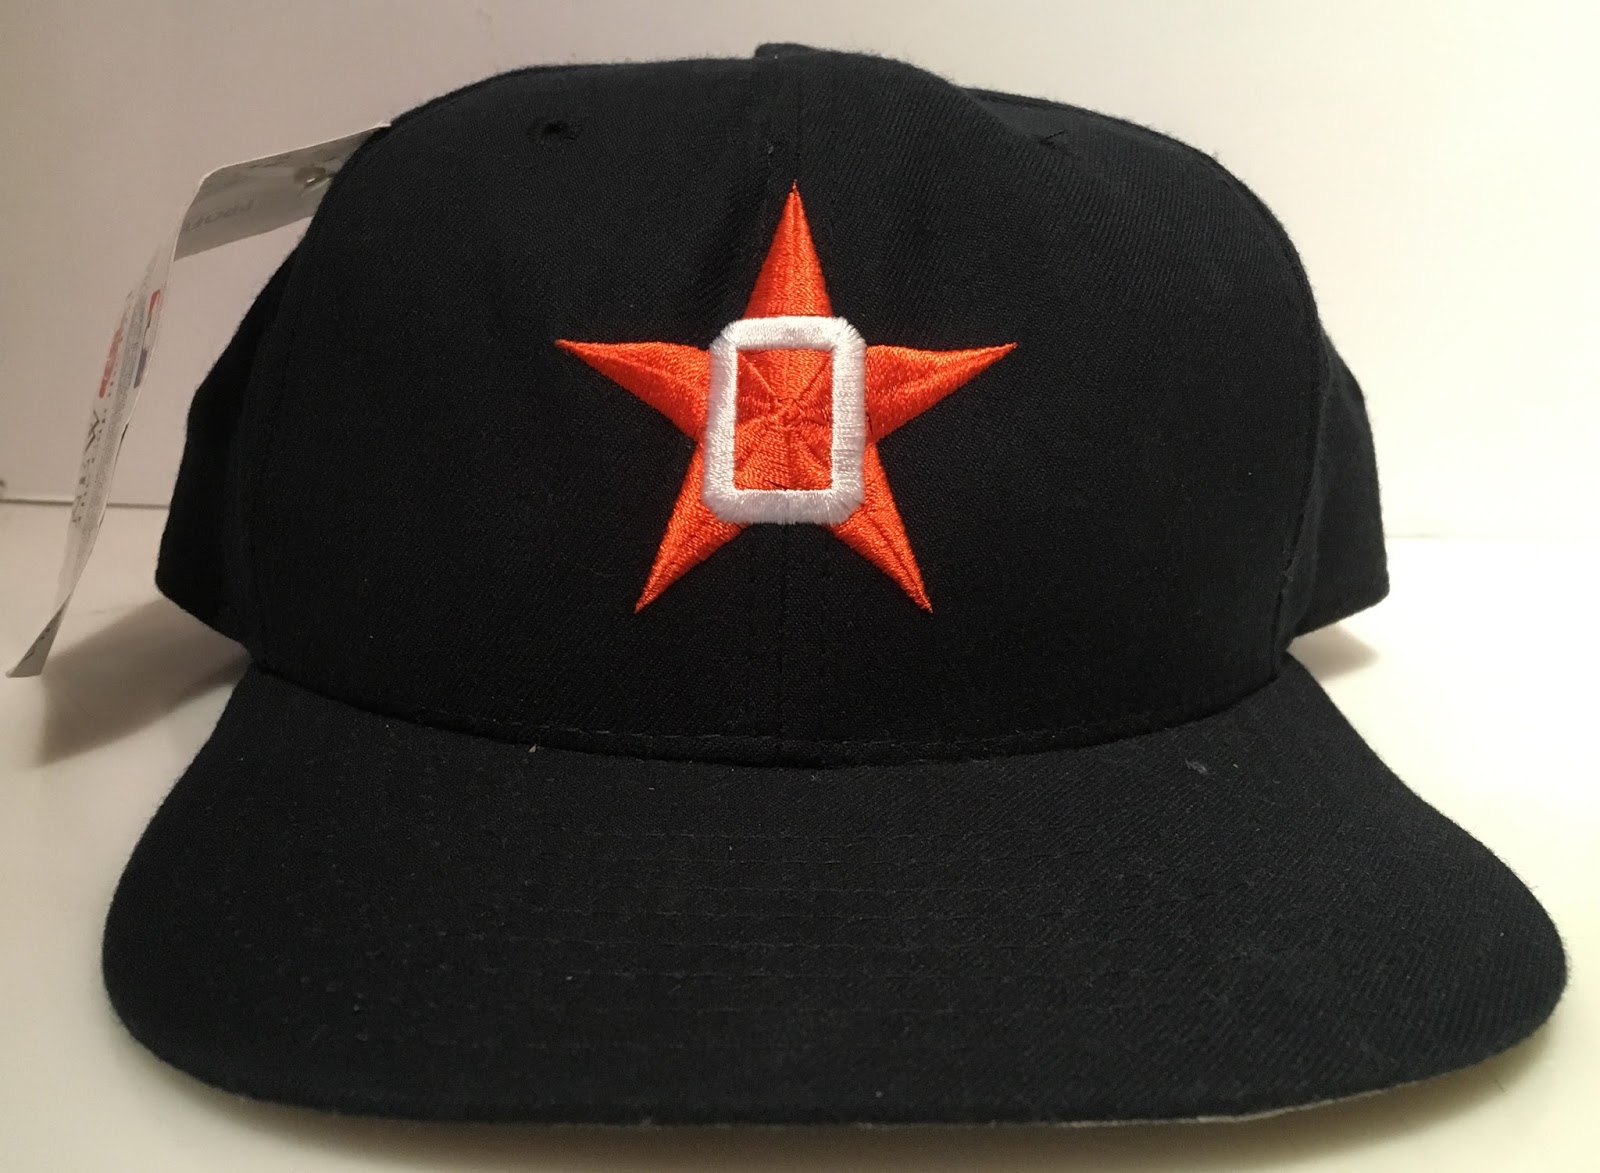 1991-94 Osceola Astros Cap